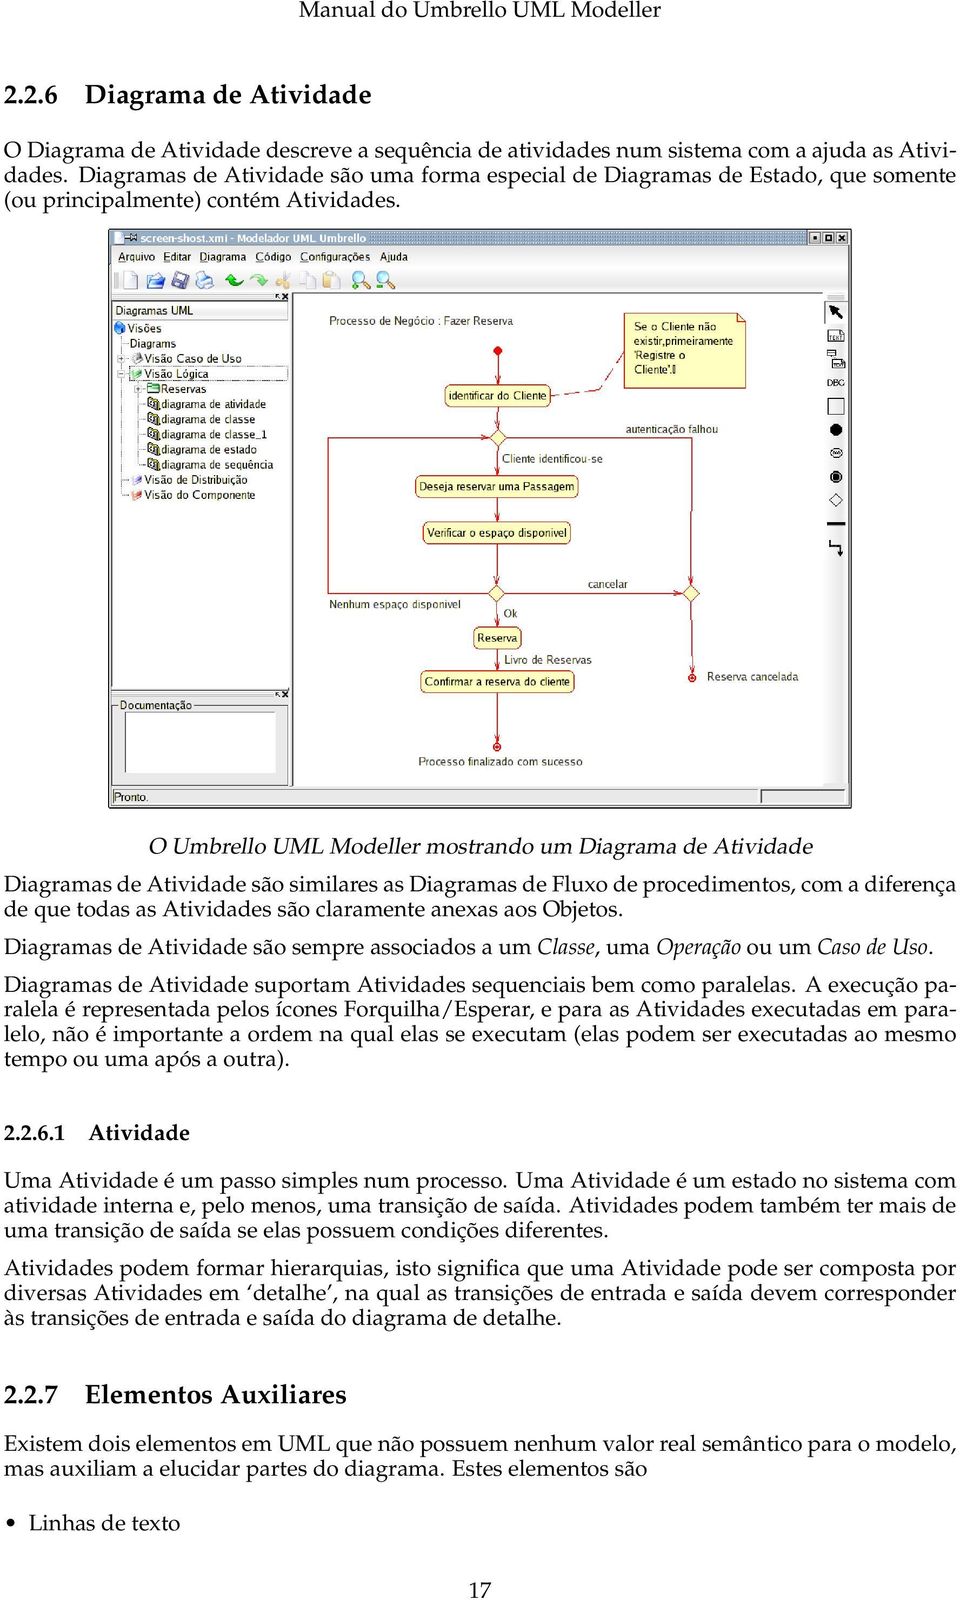 O Umbrello UML Modeller mostrando um Diagrama de Atividade Diagramas de Atividade são similares as Diagramas de Fluxo de procedimentos, com a diferença de que todas as Atividades são claramente